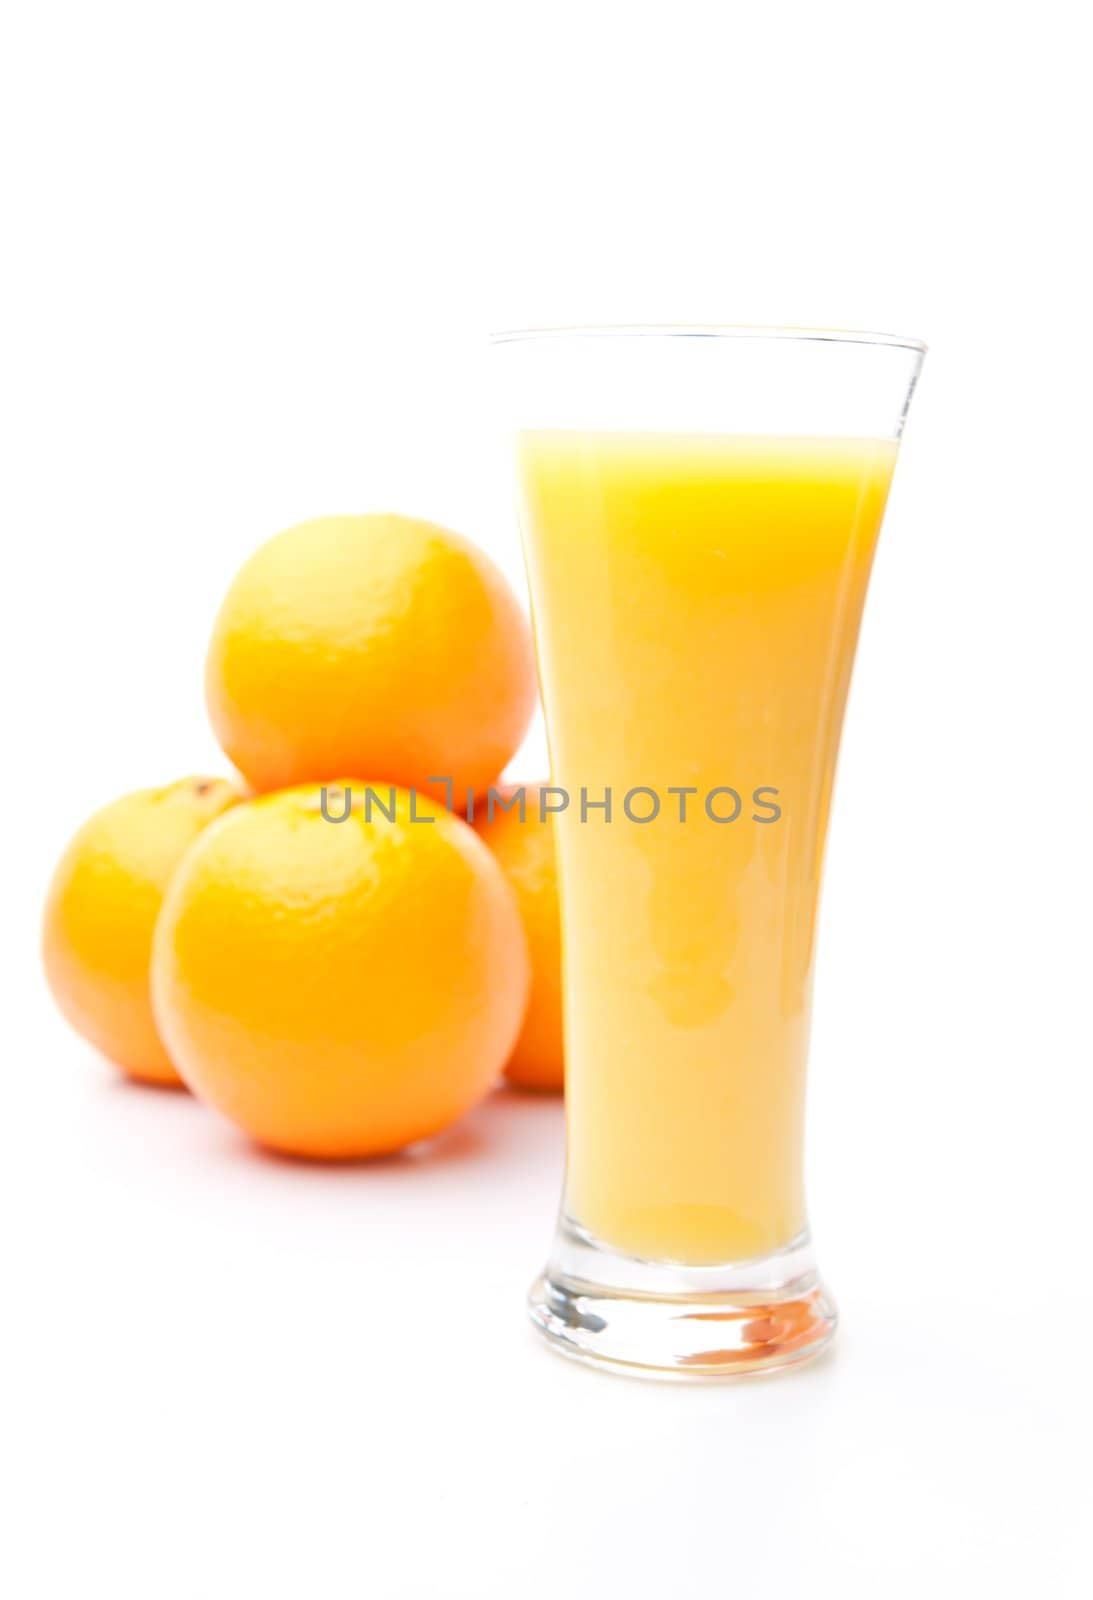 Heap of oranges behind a glass of orange juice by Wavebreakmedia